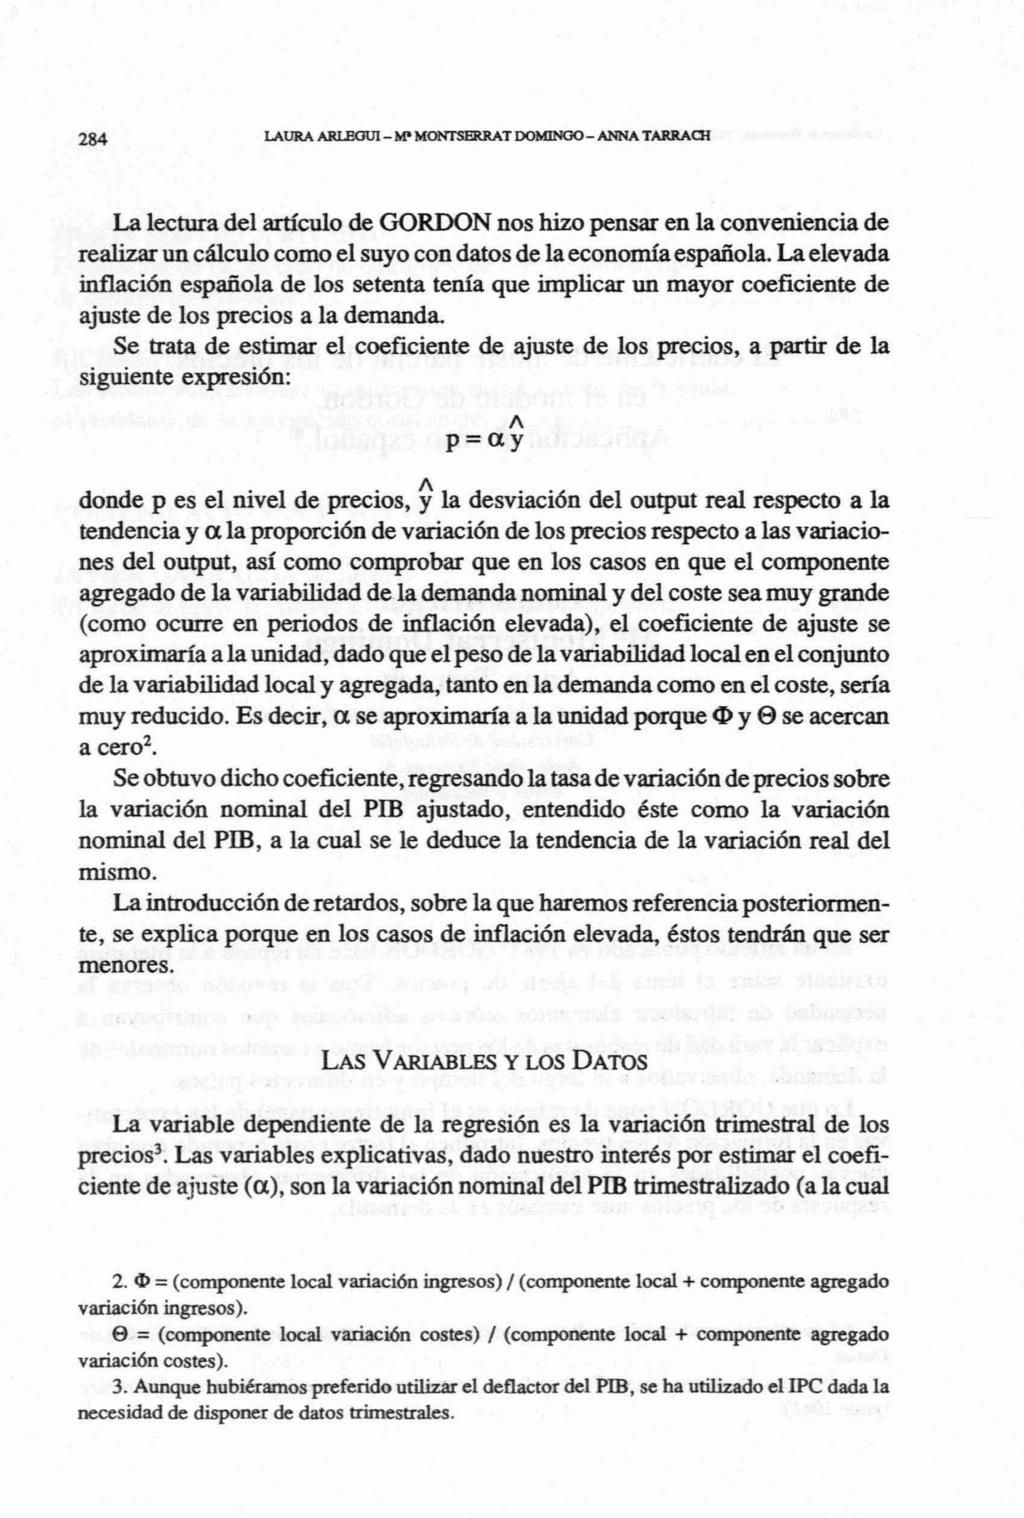 La lectura del articulo de GORDON nos hizo pensar en la conveniencia de realizar un cáiculo como el suyo con datos de la economía española.